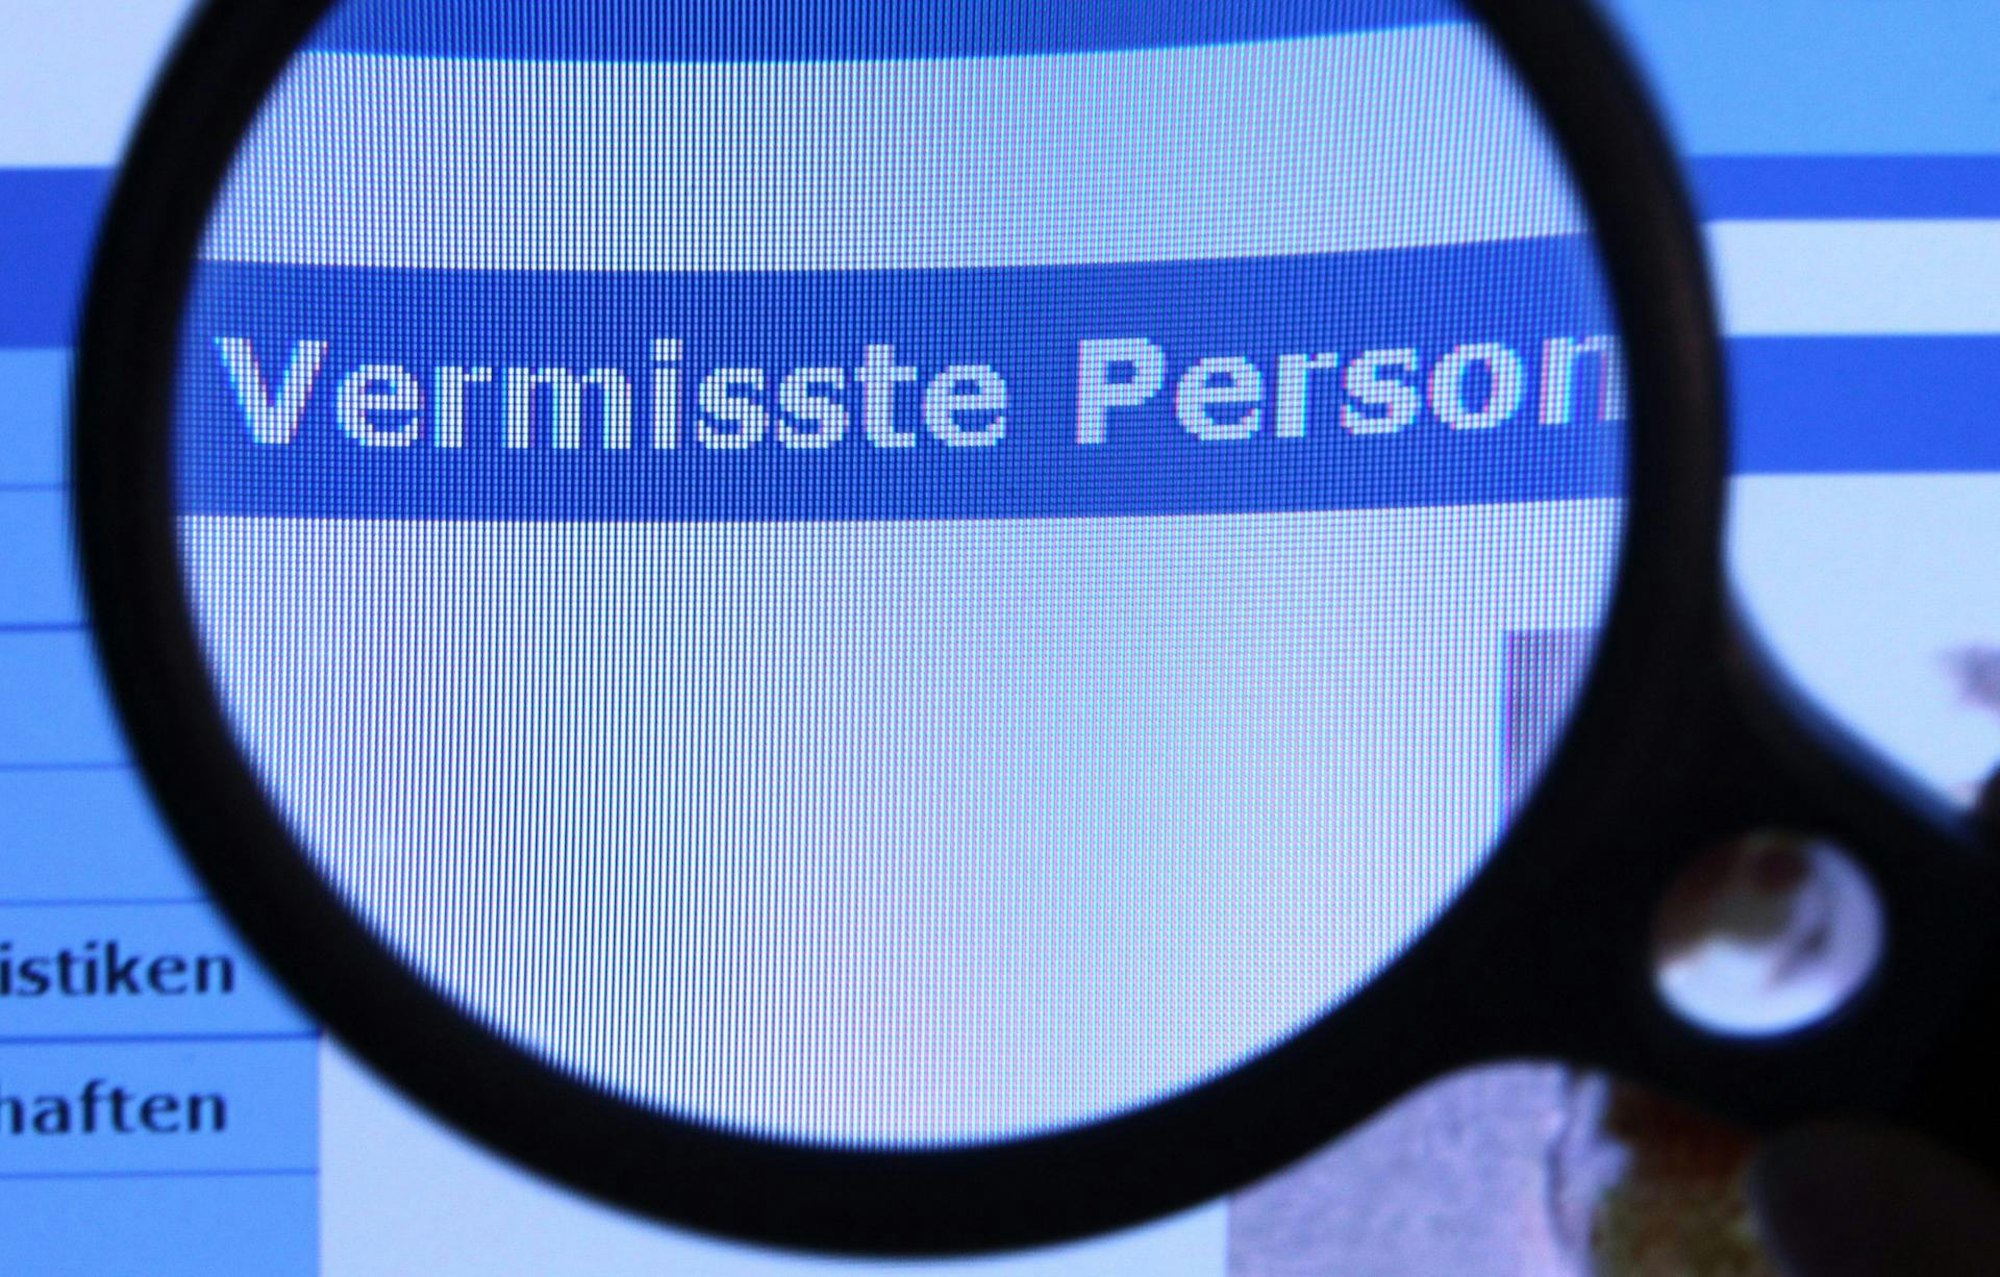 Die Polizei sucht häufig mit Online-Aufrufen nach vermissten Personen. Dieses undatierte Symbolfoto zeigt eine Lupe auf der Website der Polize NRW.